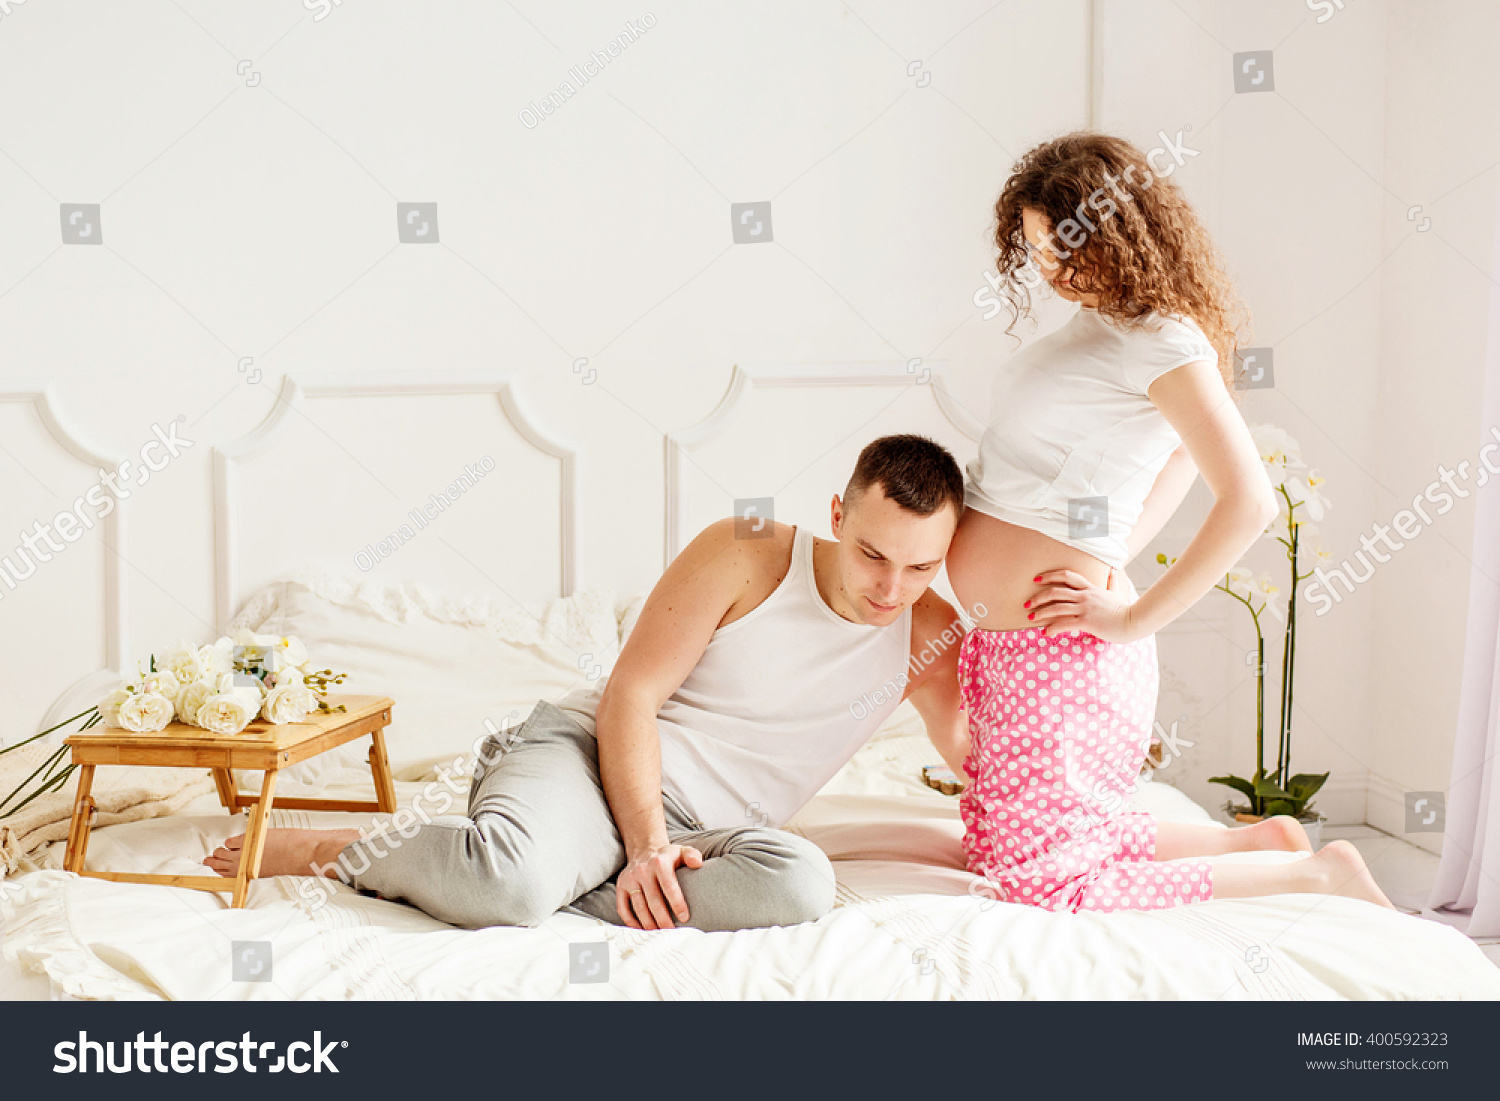 Фотосессия беременных с мужем на кровати